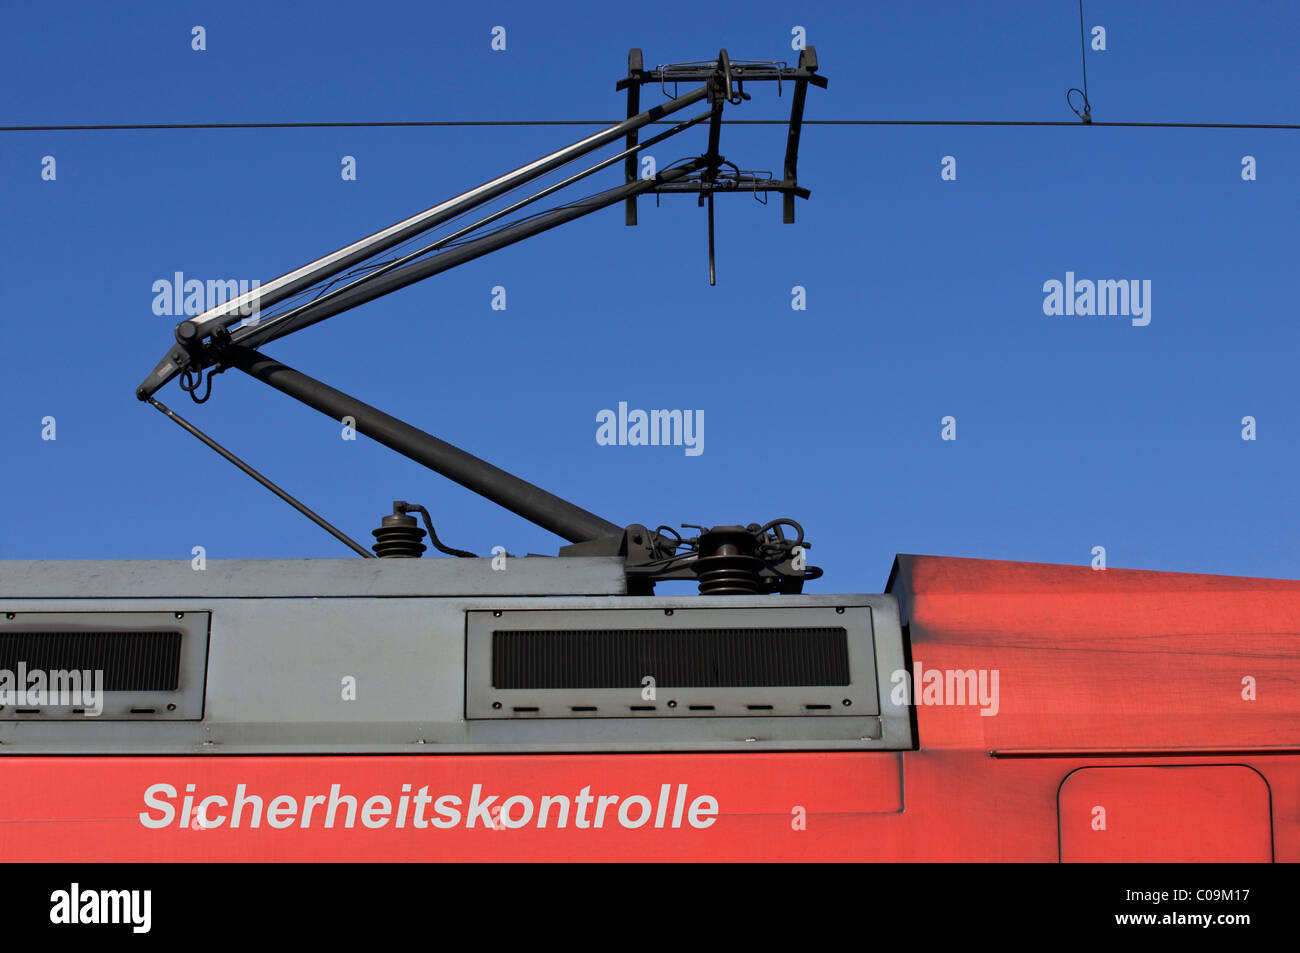 Treno, power car con il pantografo, scrivendo "icherheitskontrolle' controllo di sicurezza, la composizione Foto Stock